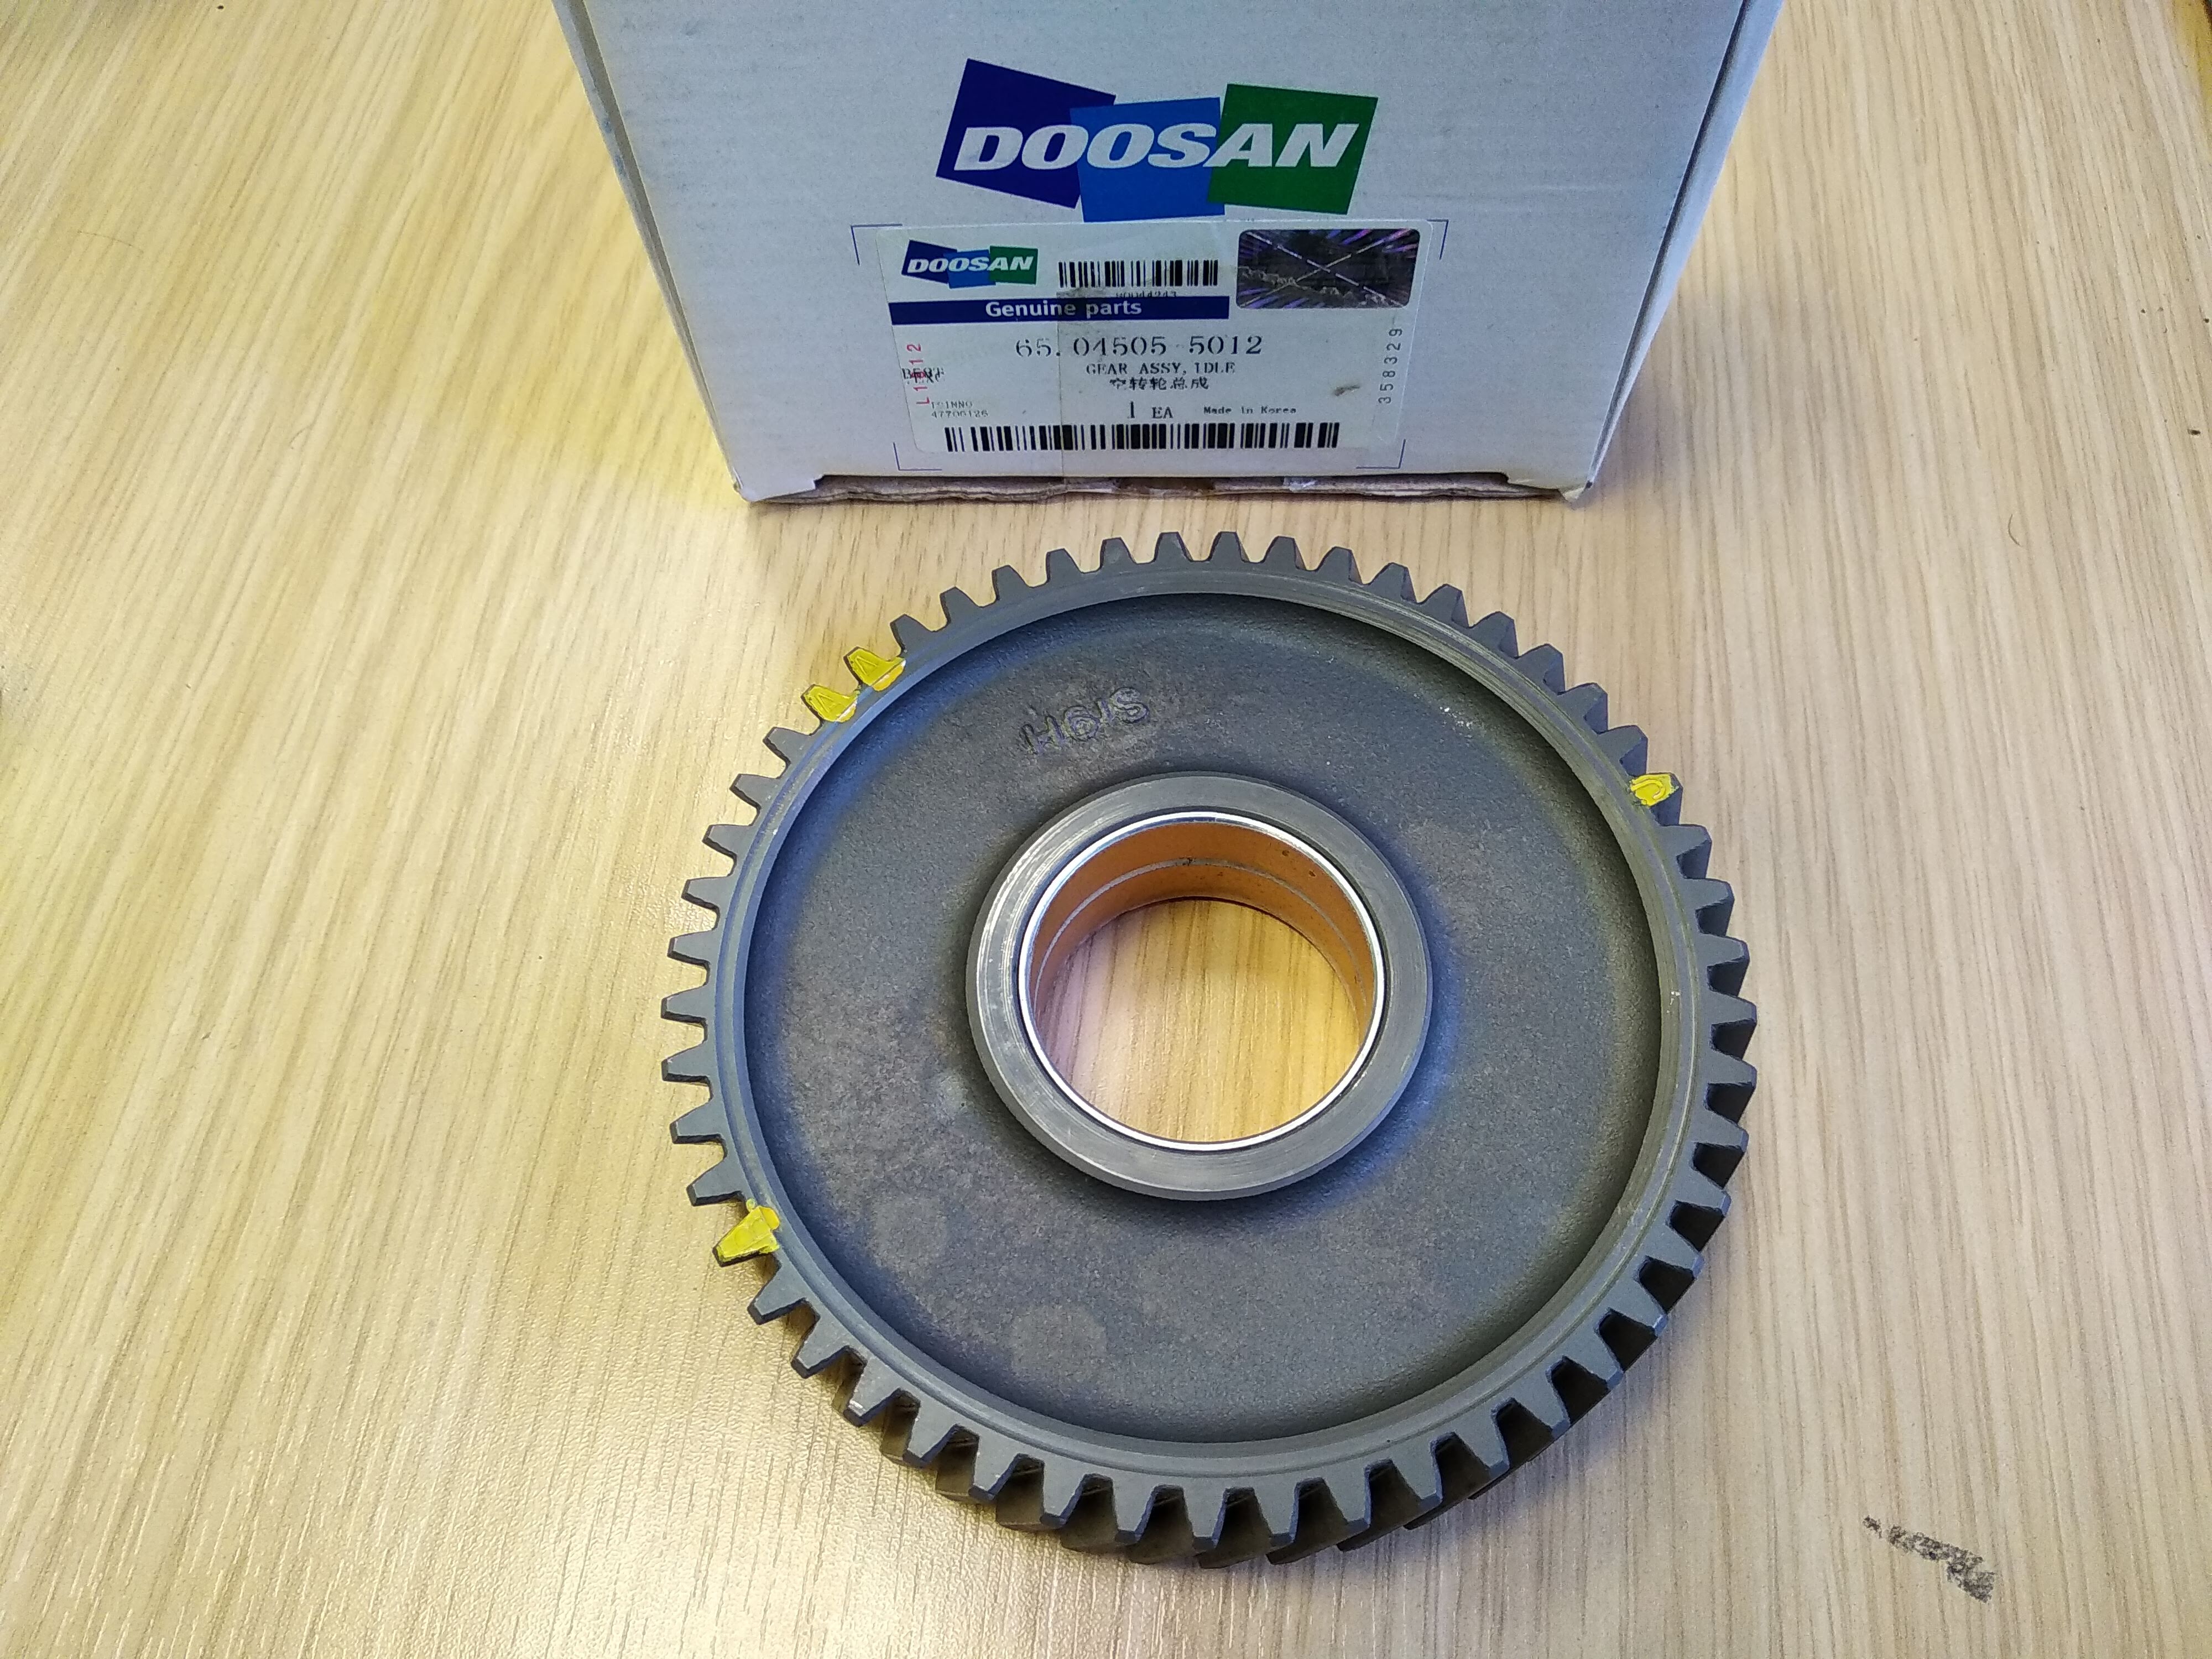 Gear wheel Doosan 65.04505-5012